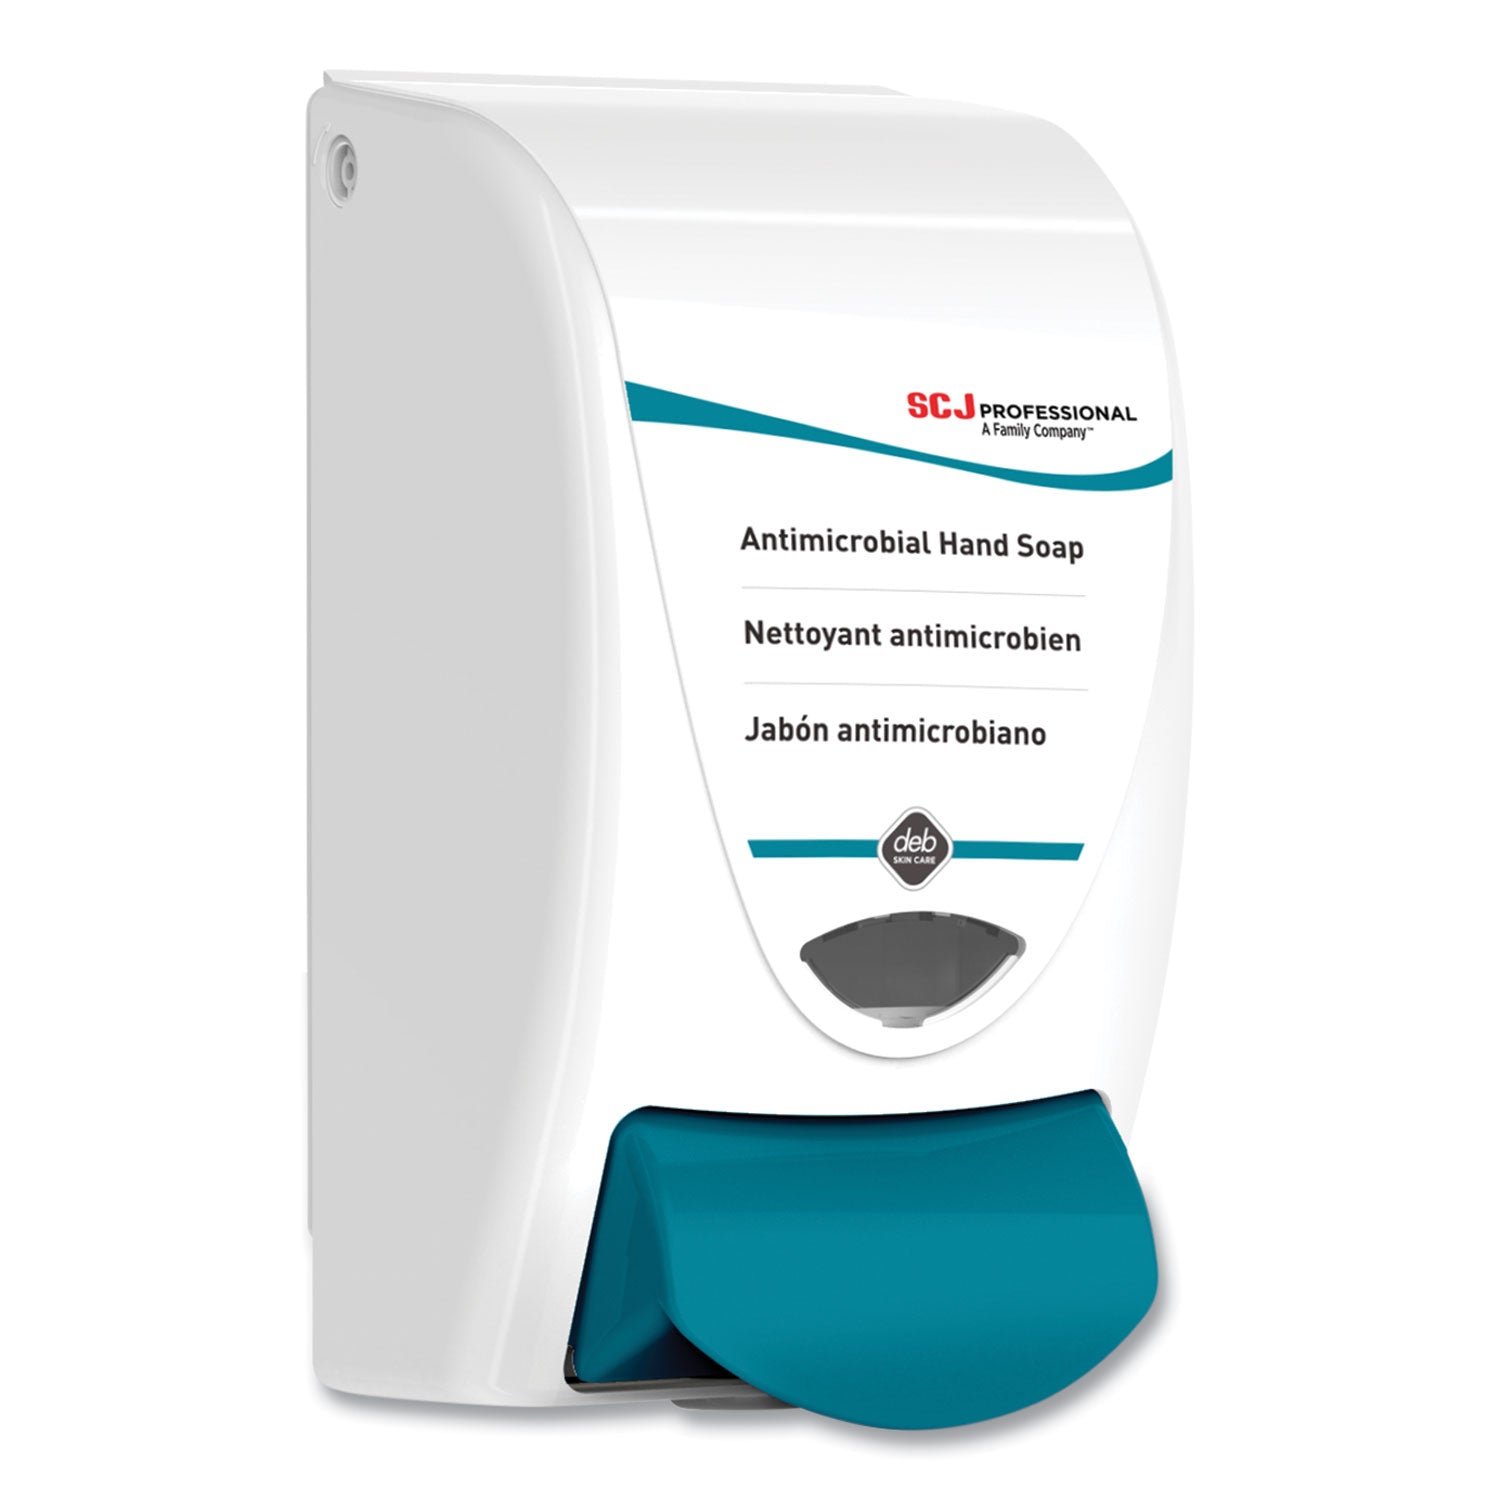 cleanse-antibac-dispenser-1-l-462-x-492-x-925-white-6-carton_sjnant1ldsea - 4